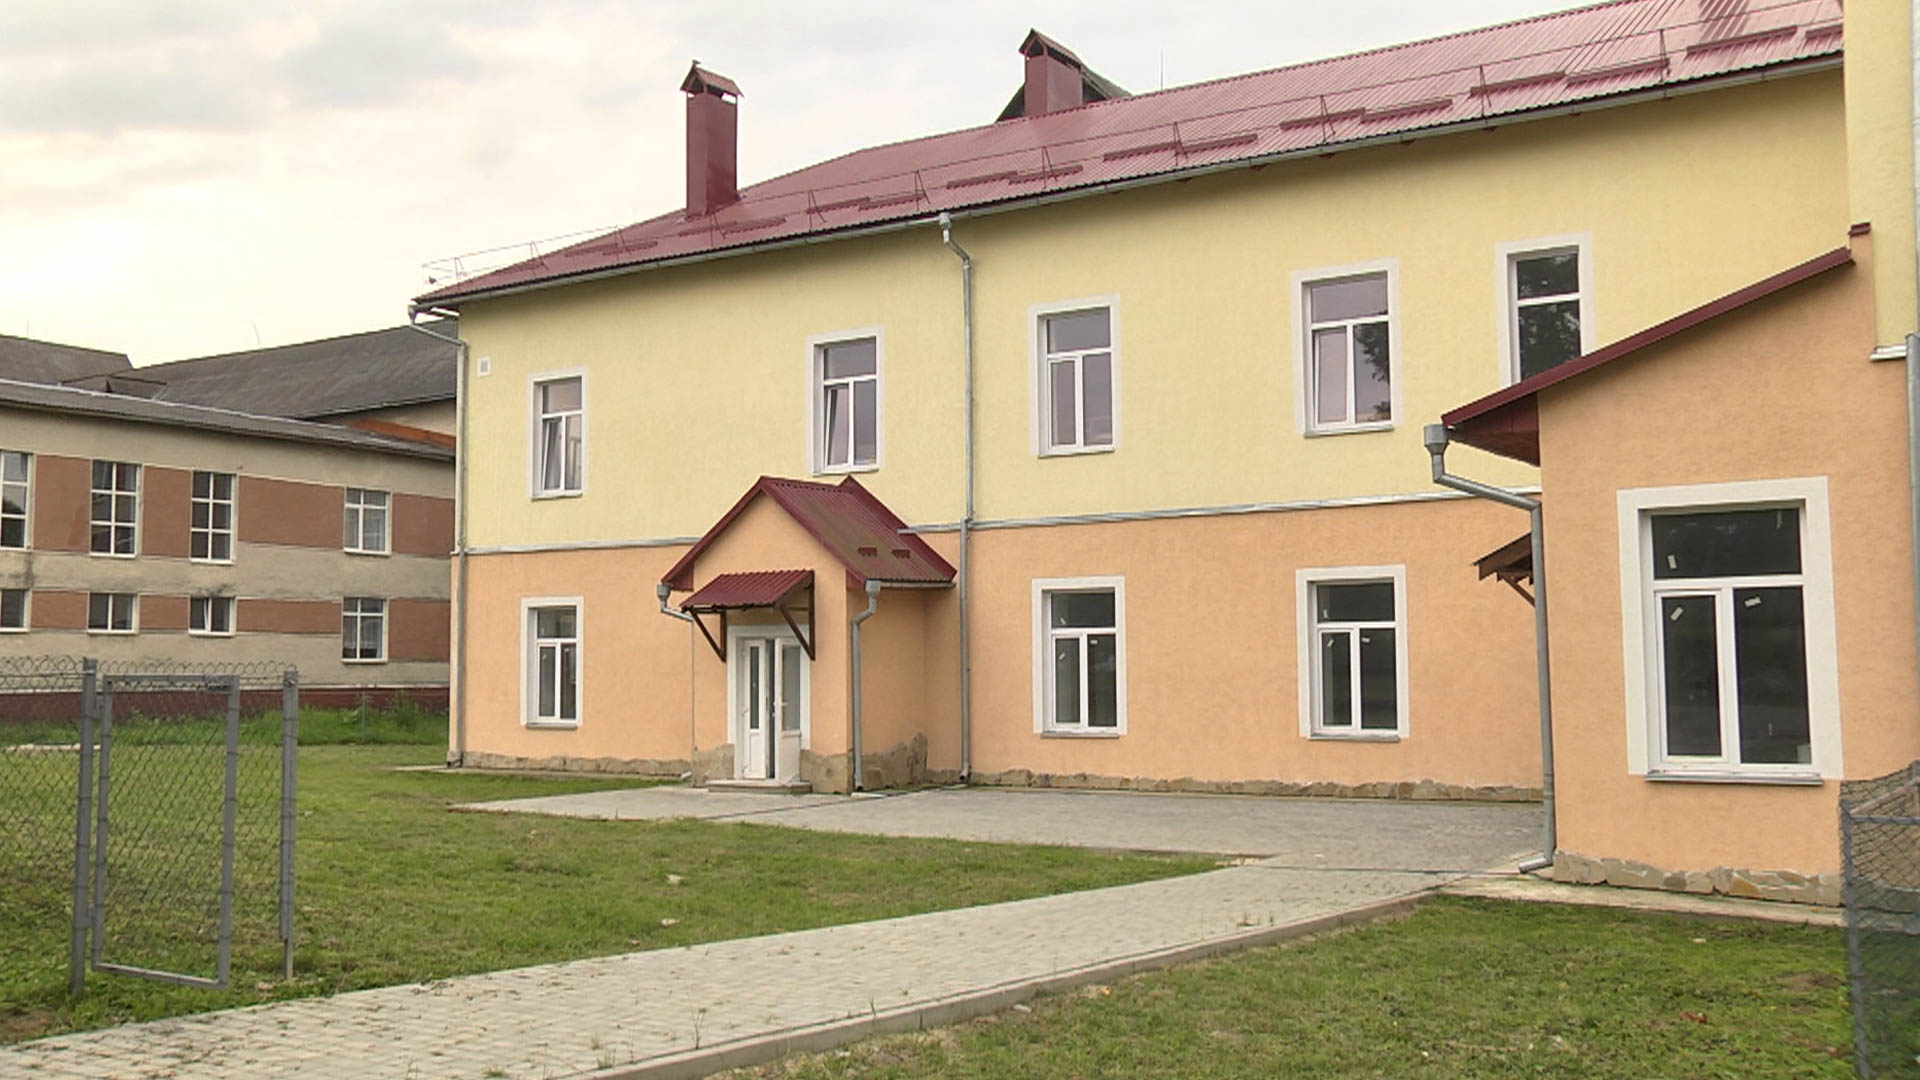 Чекали десять років: у селі на Коломийщині відкриють дитсадок (ВІДЕО)